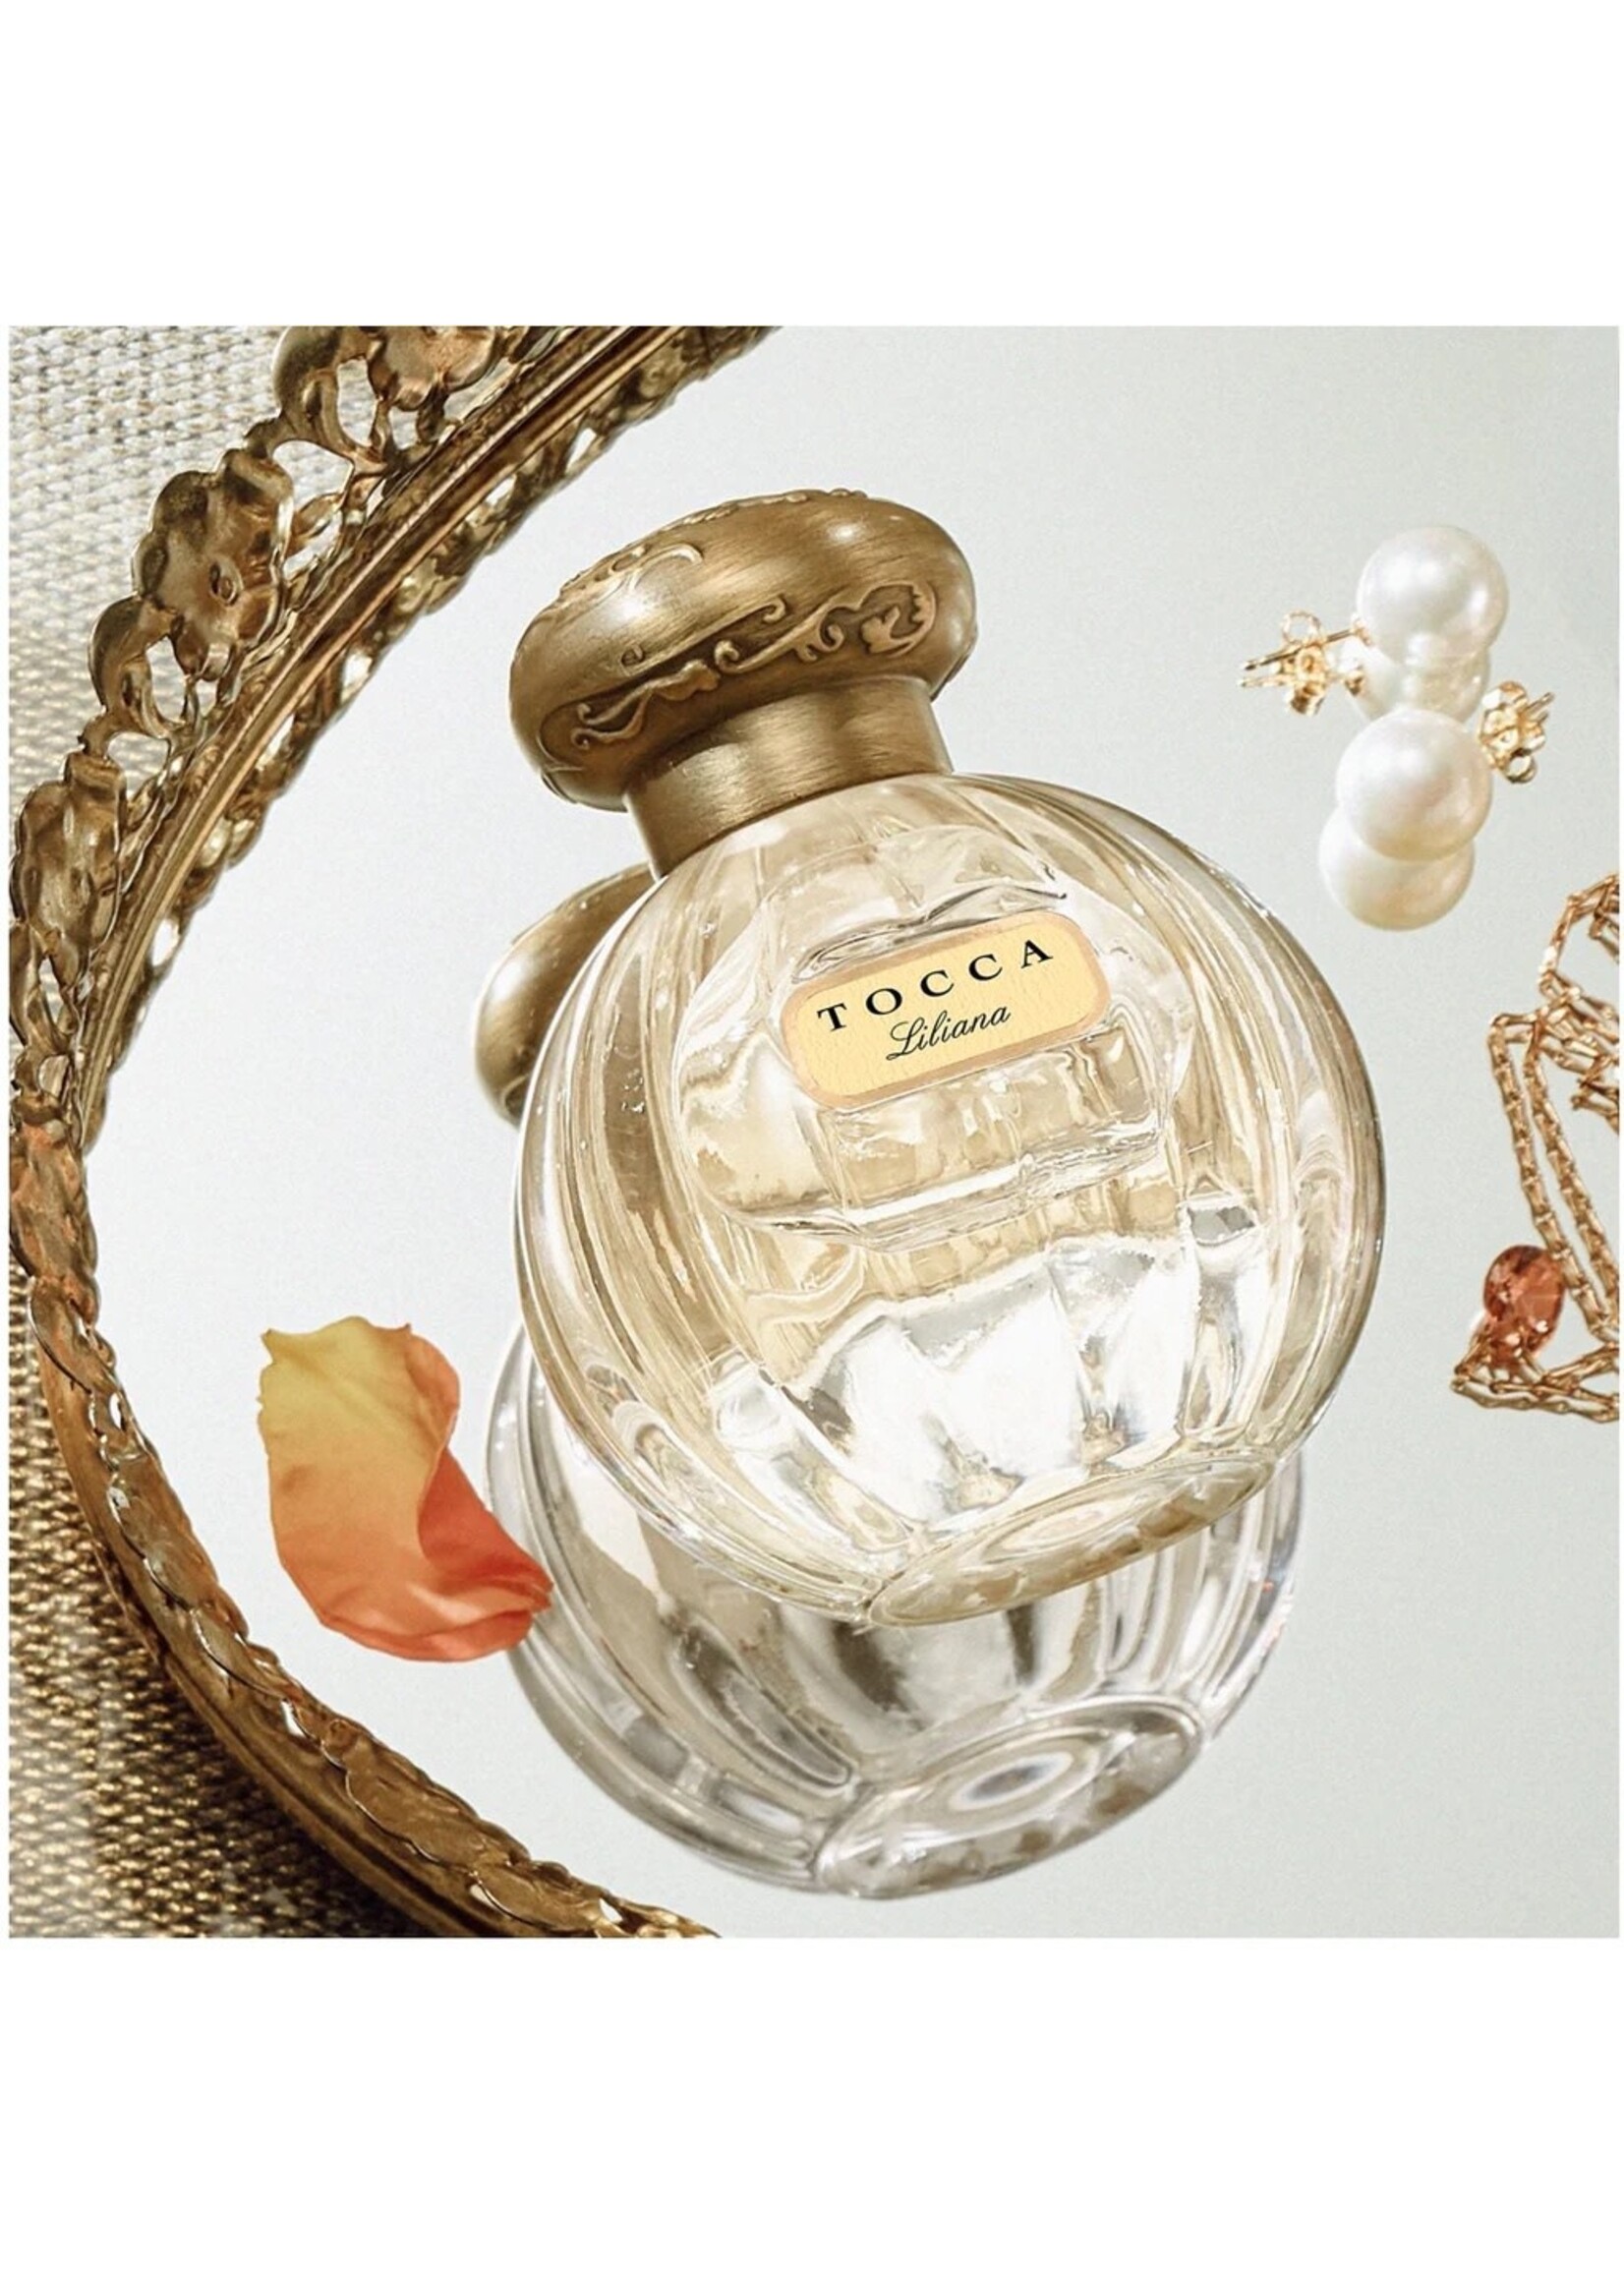 Tocca Liliana Perfume 50ml